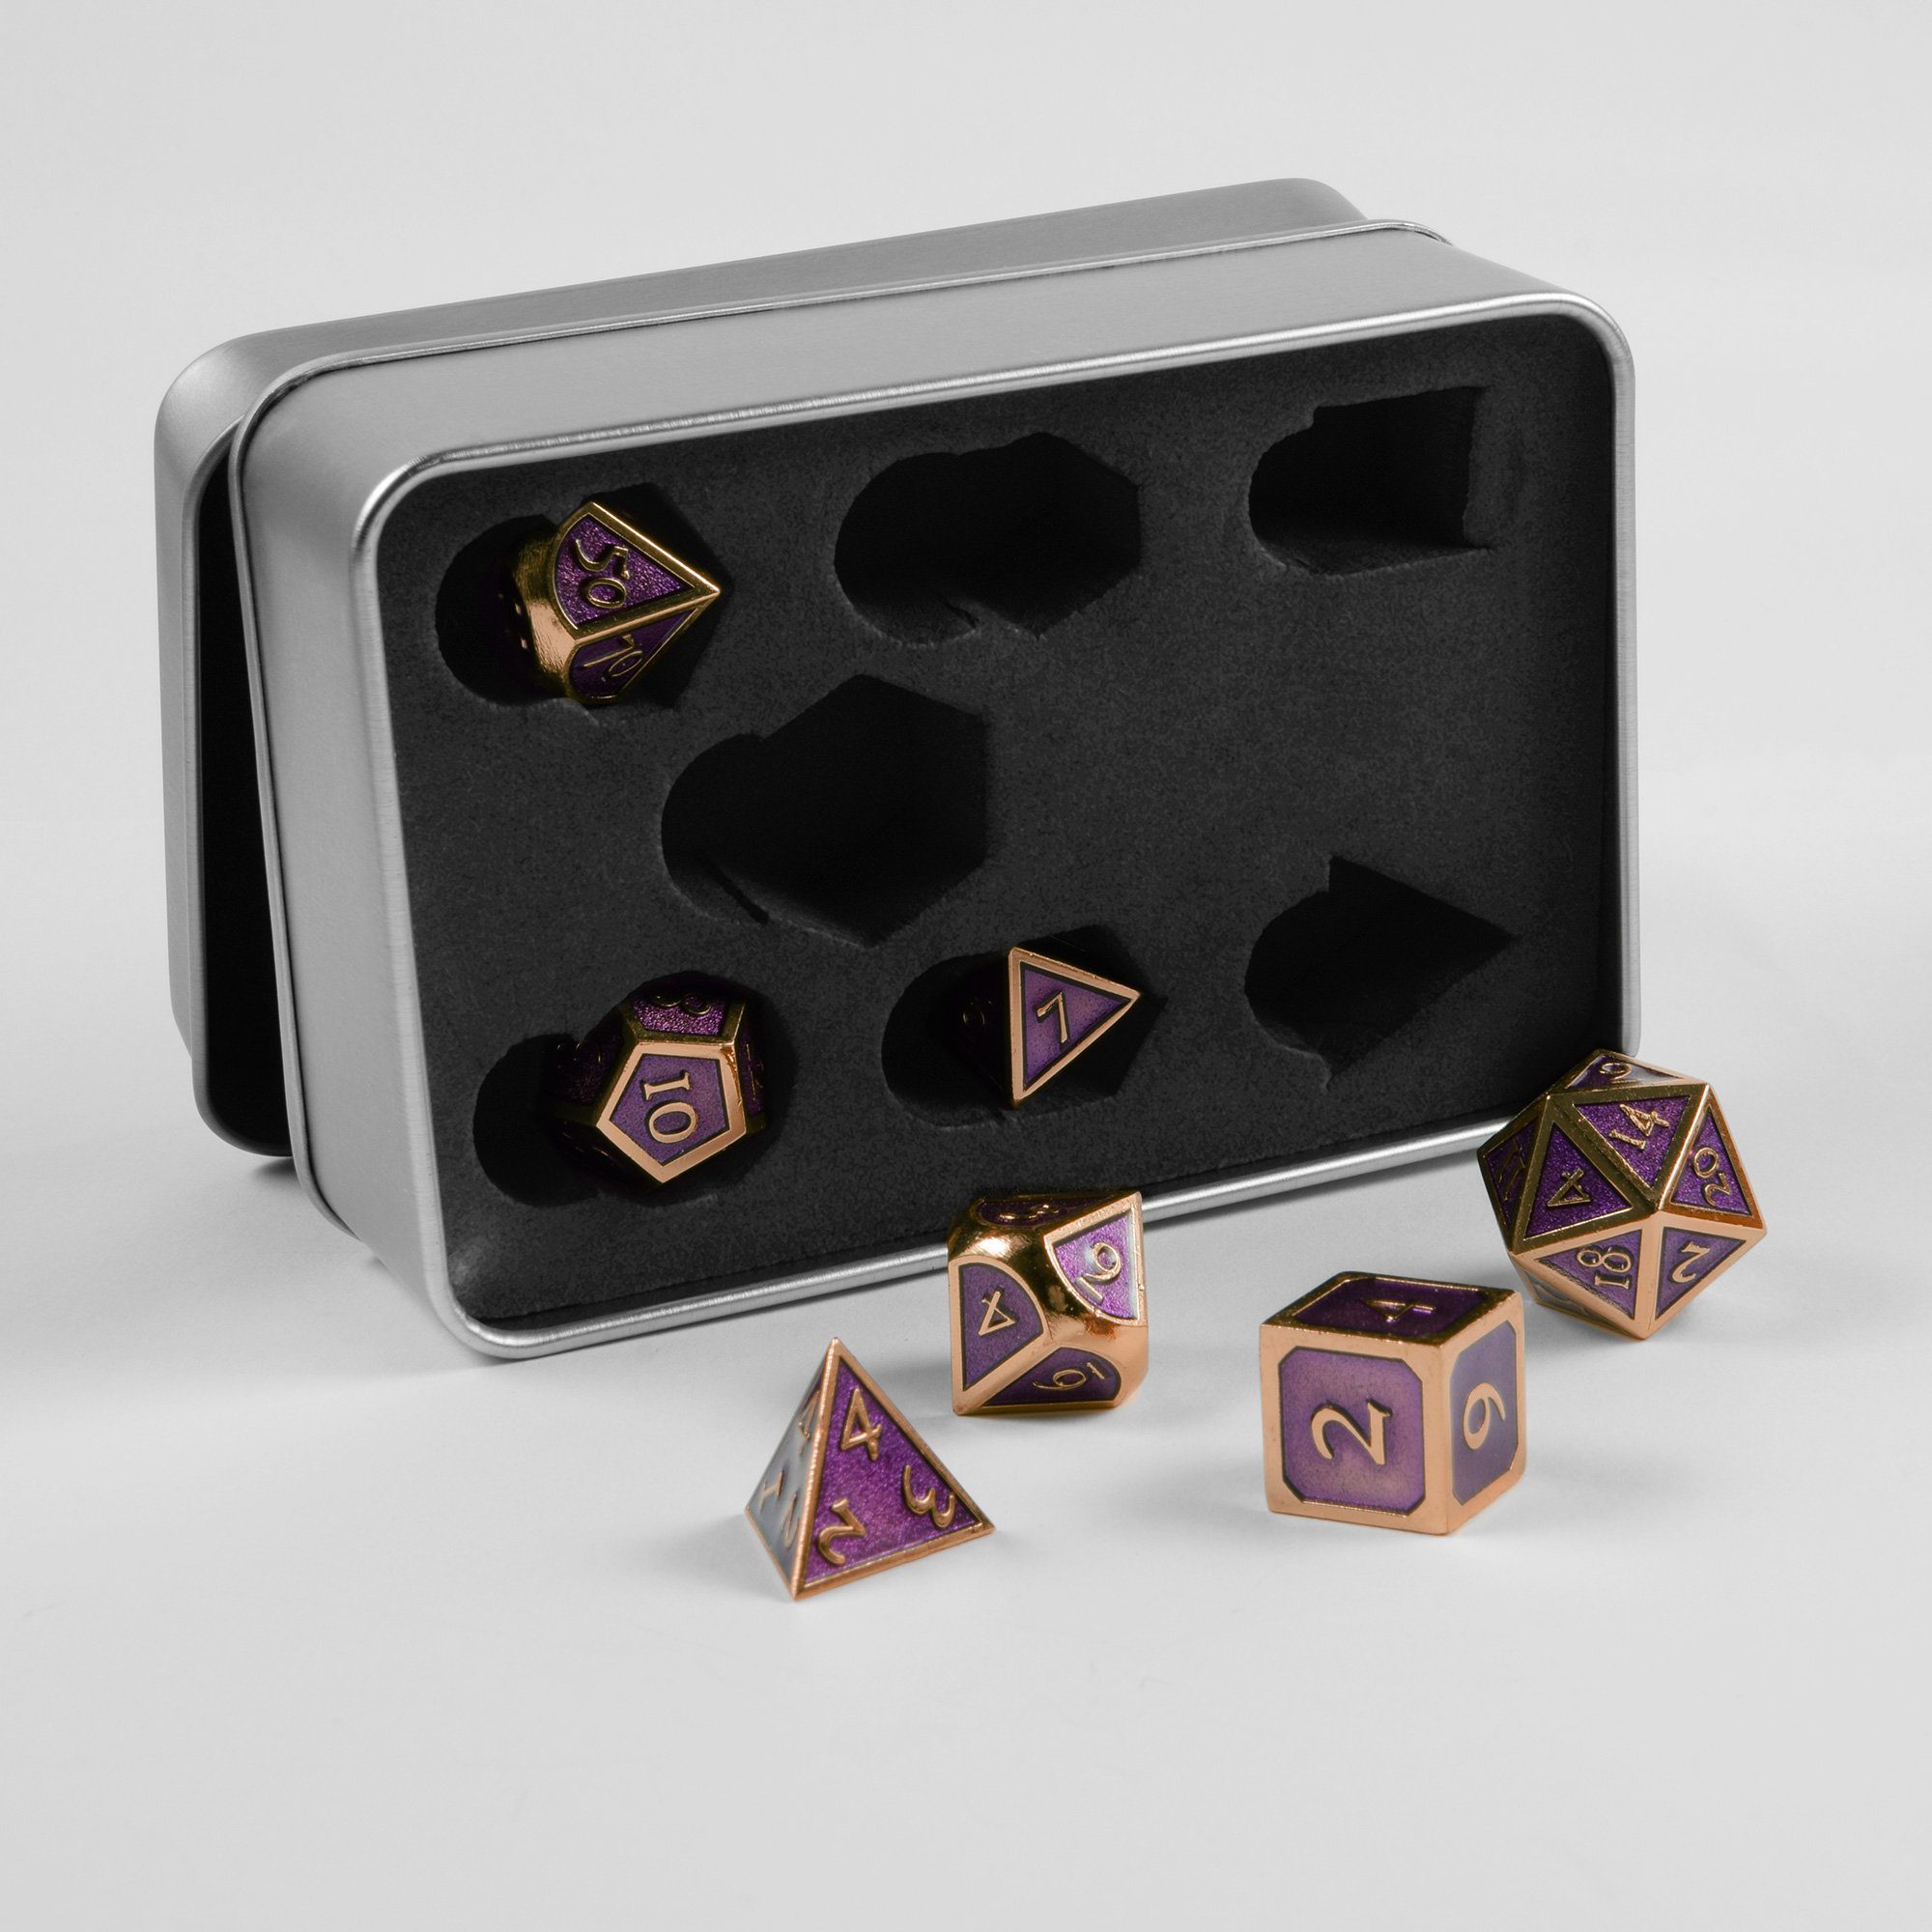 SHIBBY Spielesammlung, 7 polyedrische Metall-DND-Würfel in Steampunk Optik, inkl. Aufbewahrungsbox